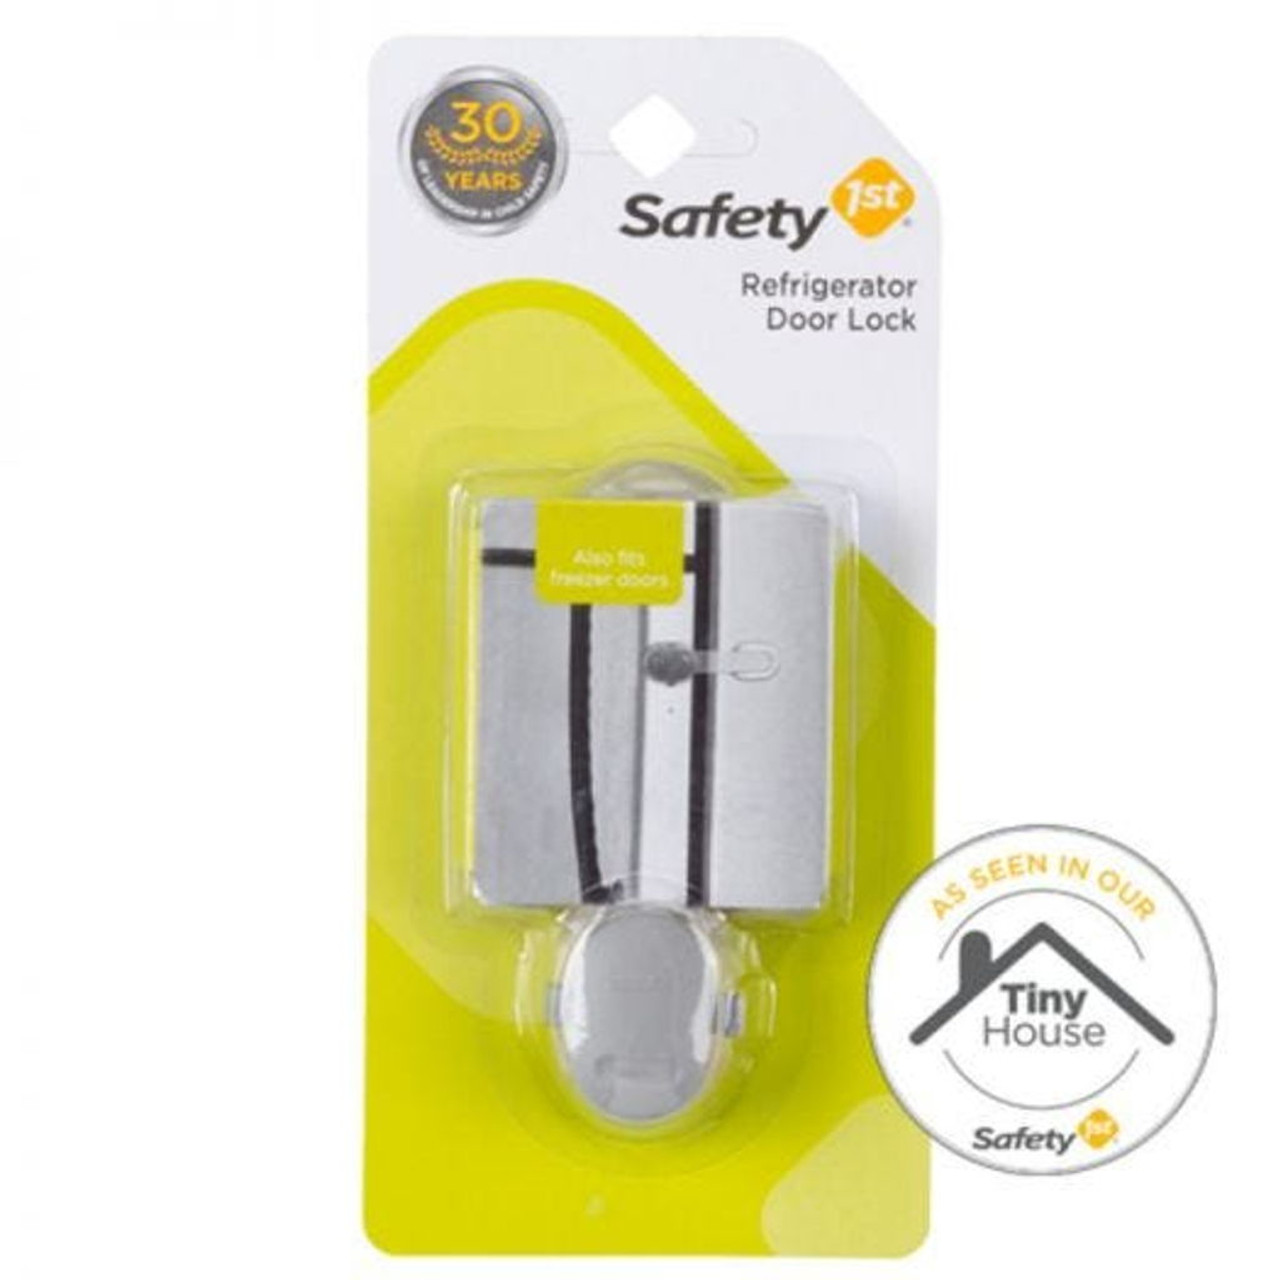 Safety 1st Oven Door Lock